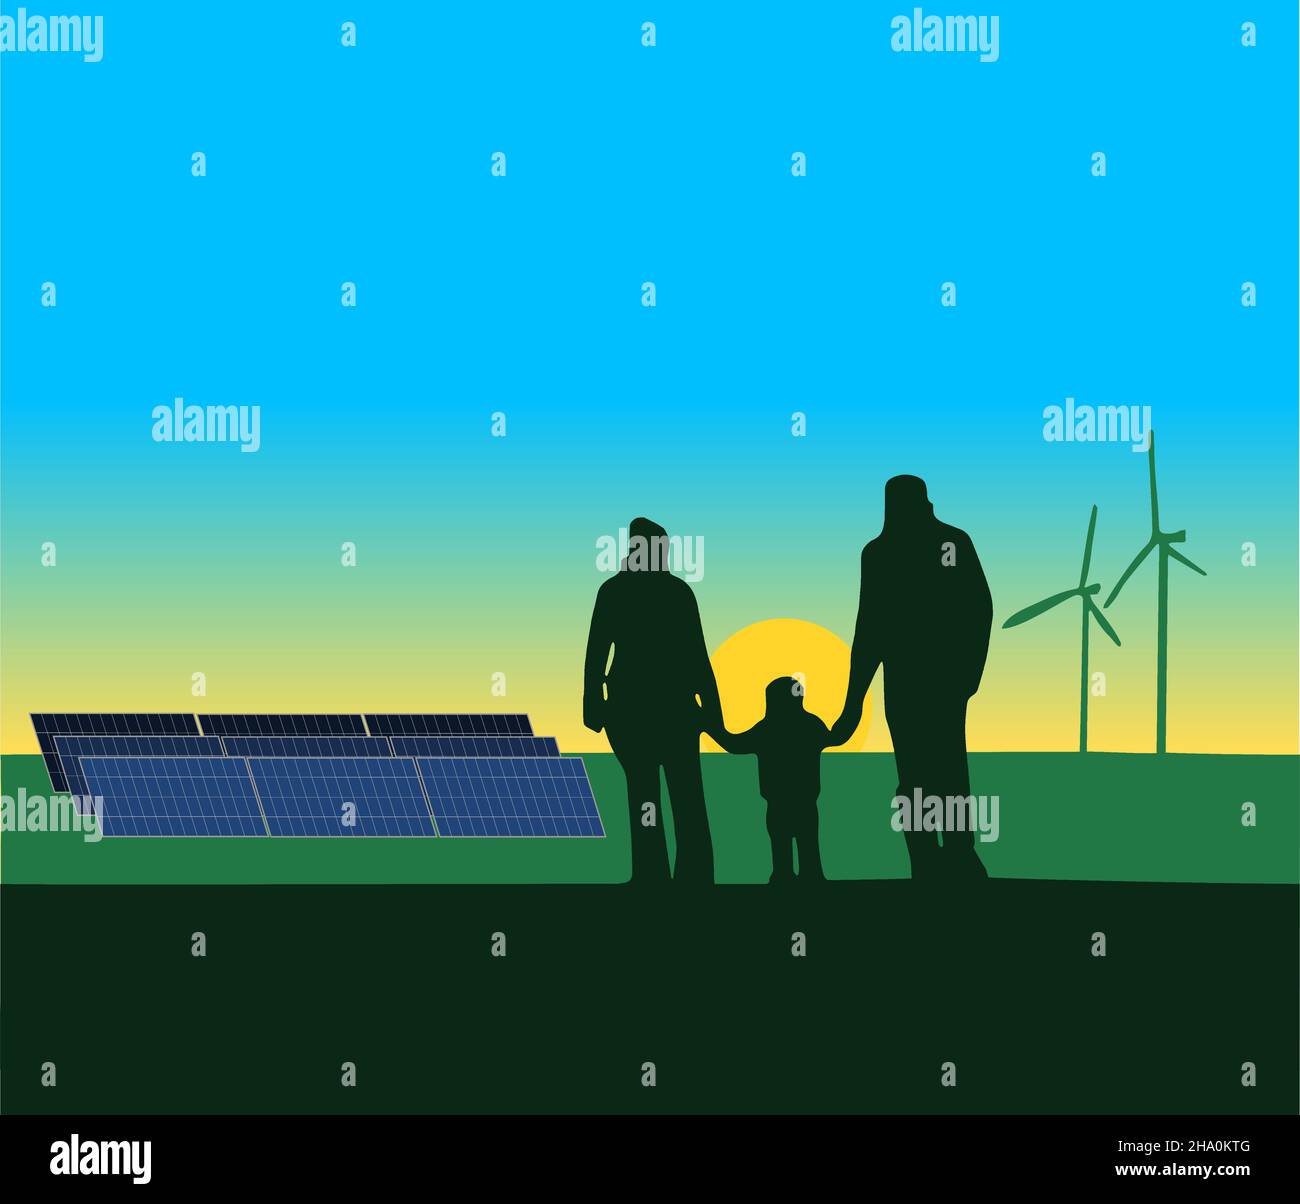 silhouette de famille regardant un paysage de panneaux solaires et de moulins à vent avec un soleil couchant. sources d'énergie renouvelables Illustration de Vecteur